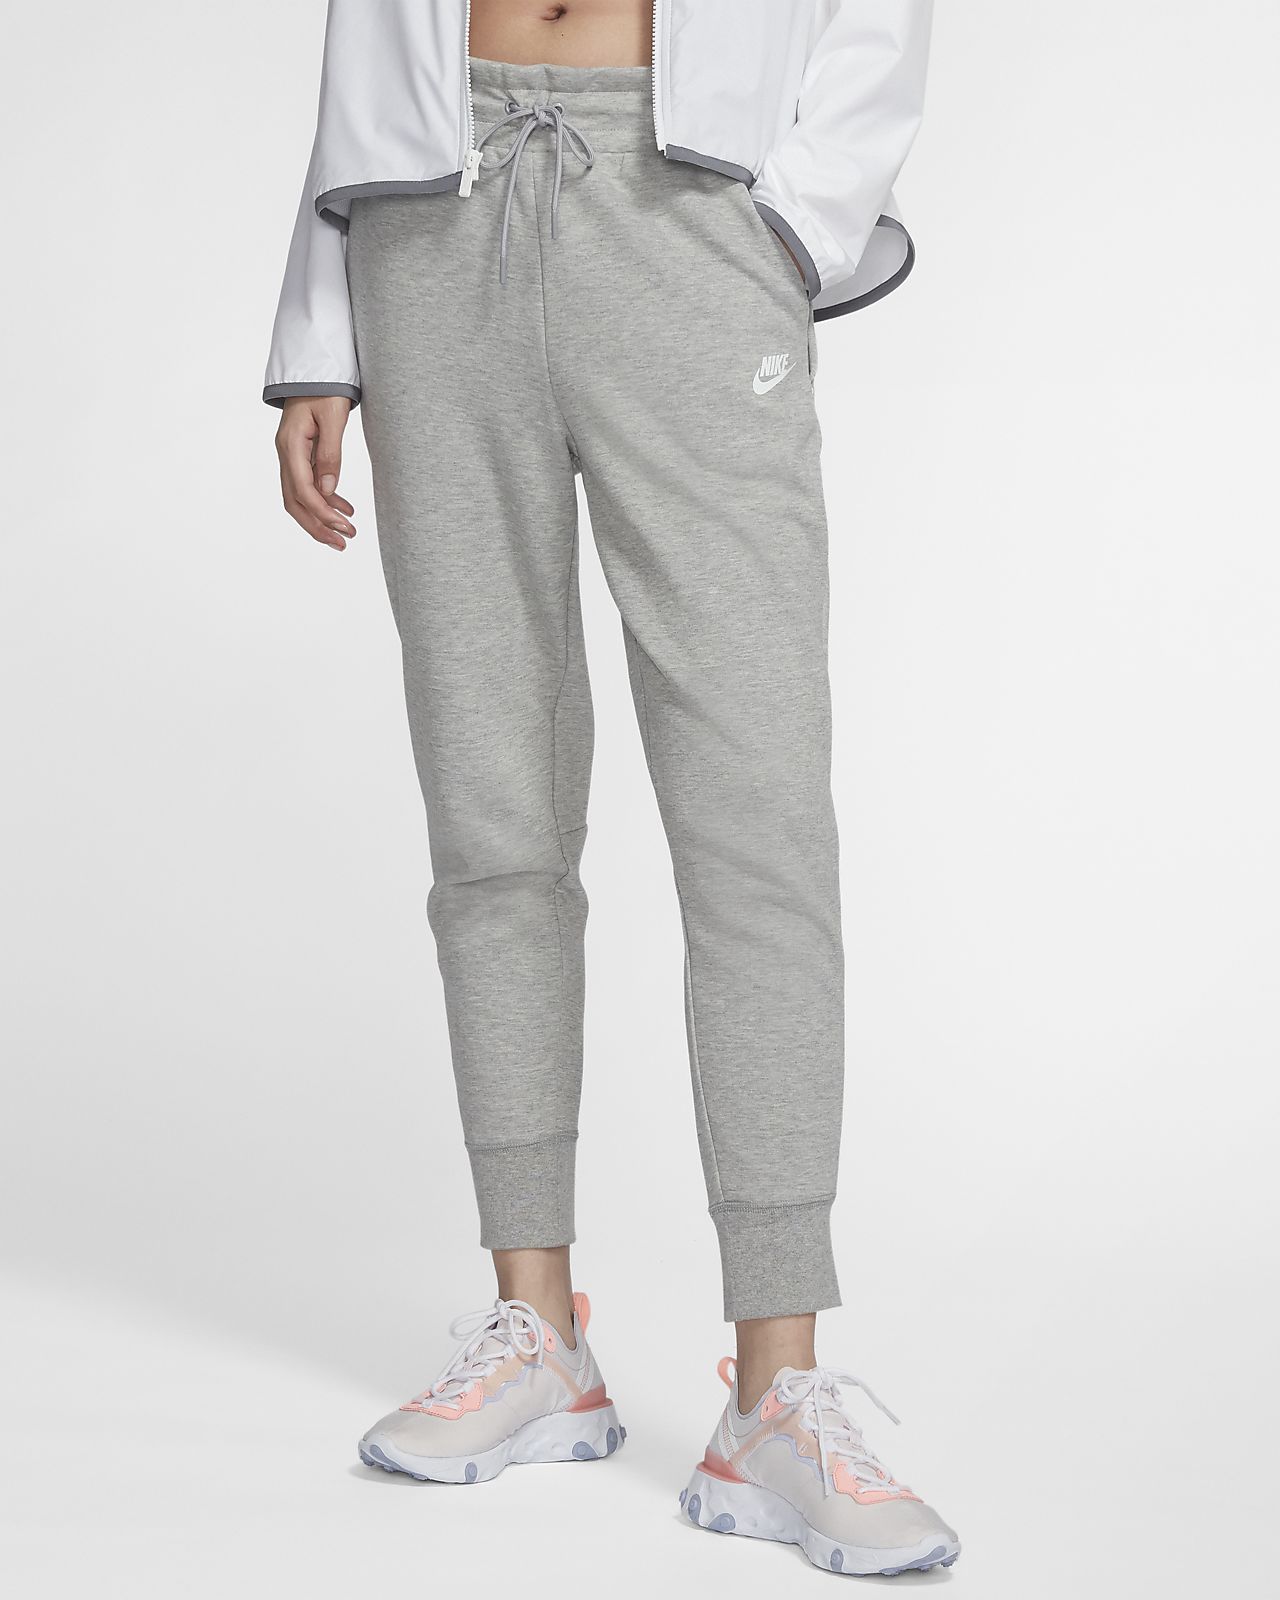 adidas essentials heather grey pullover hoodie